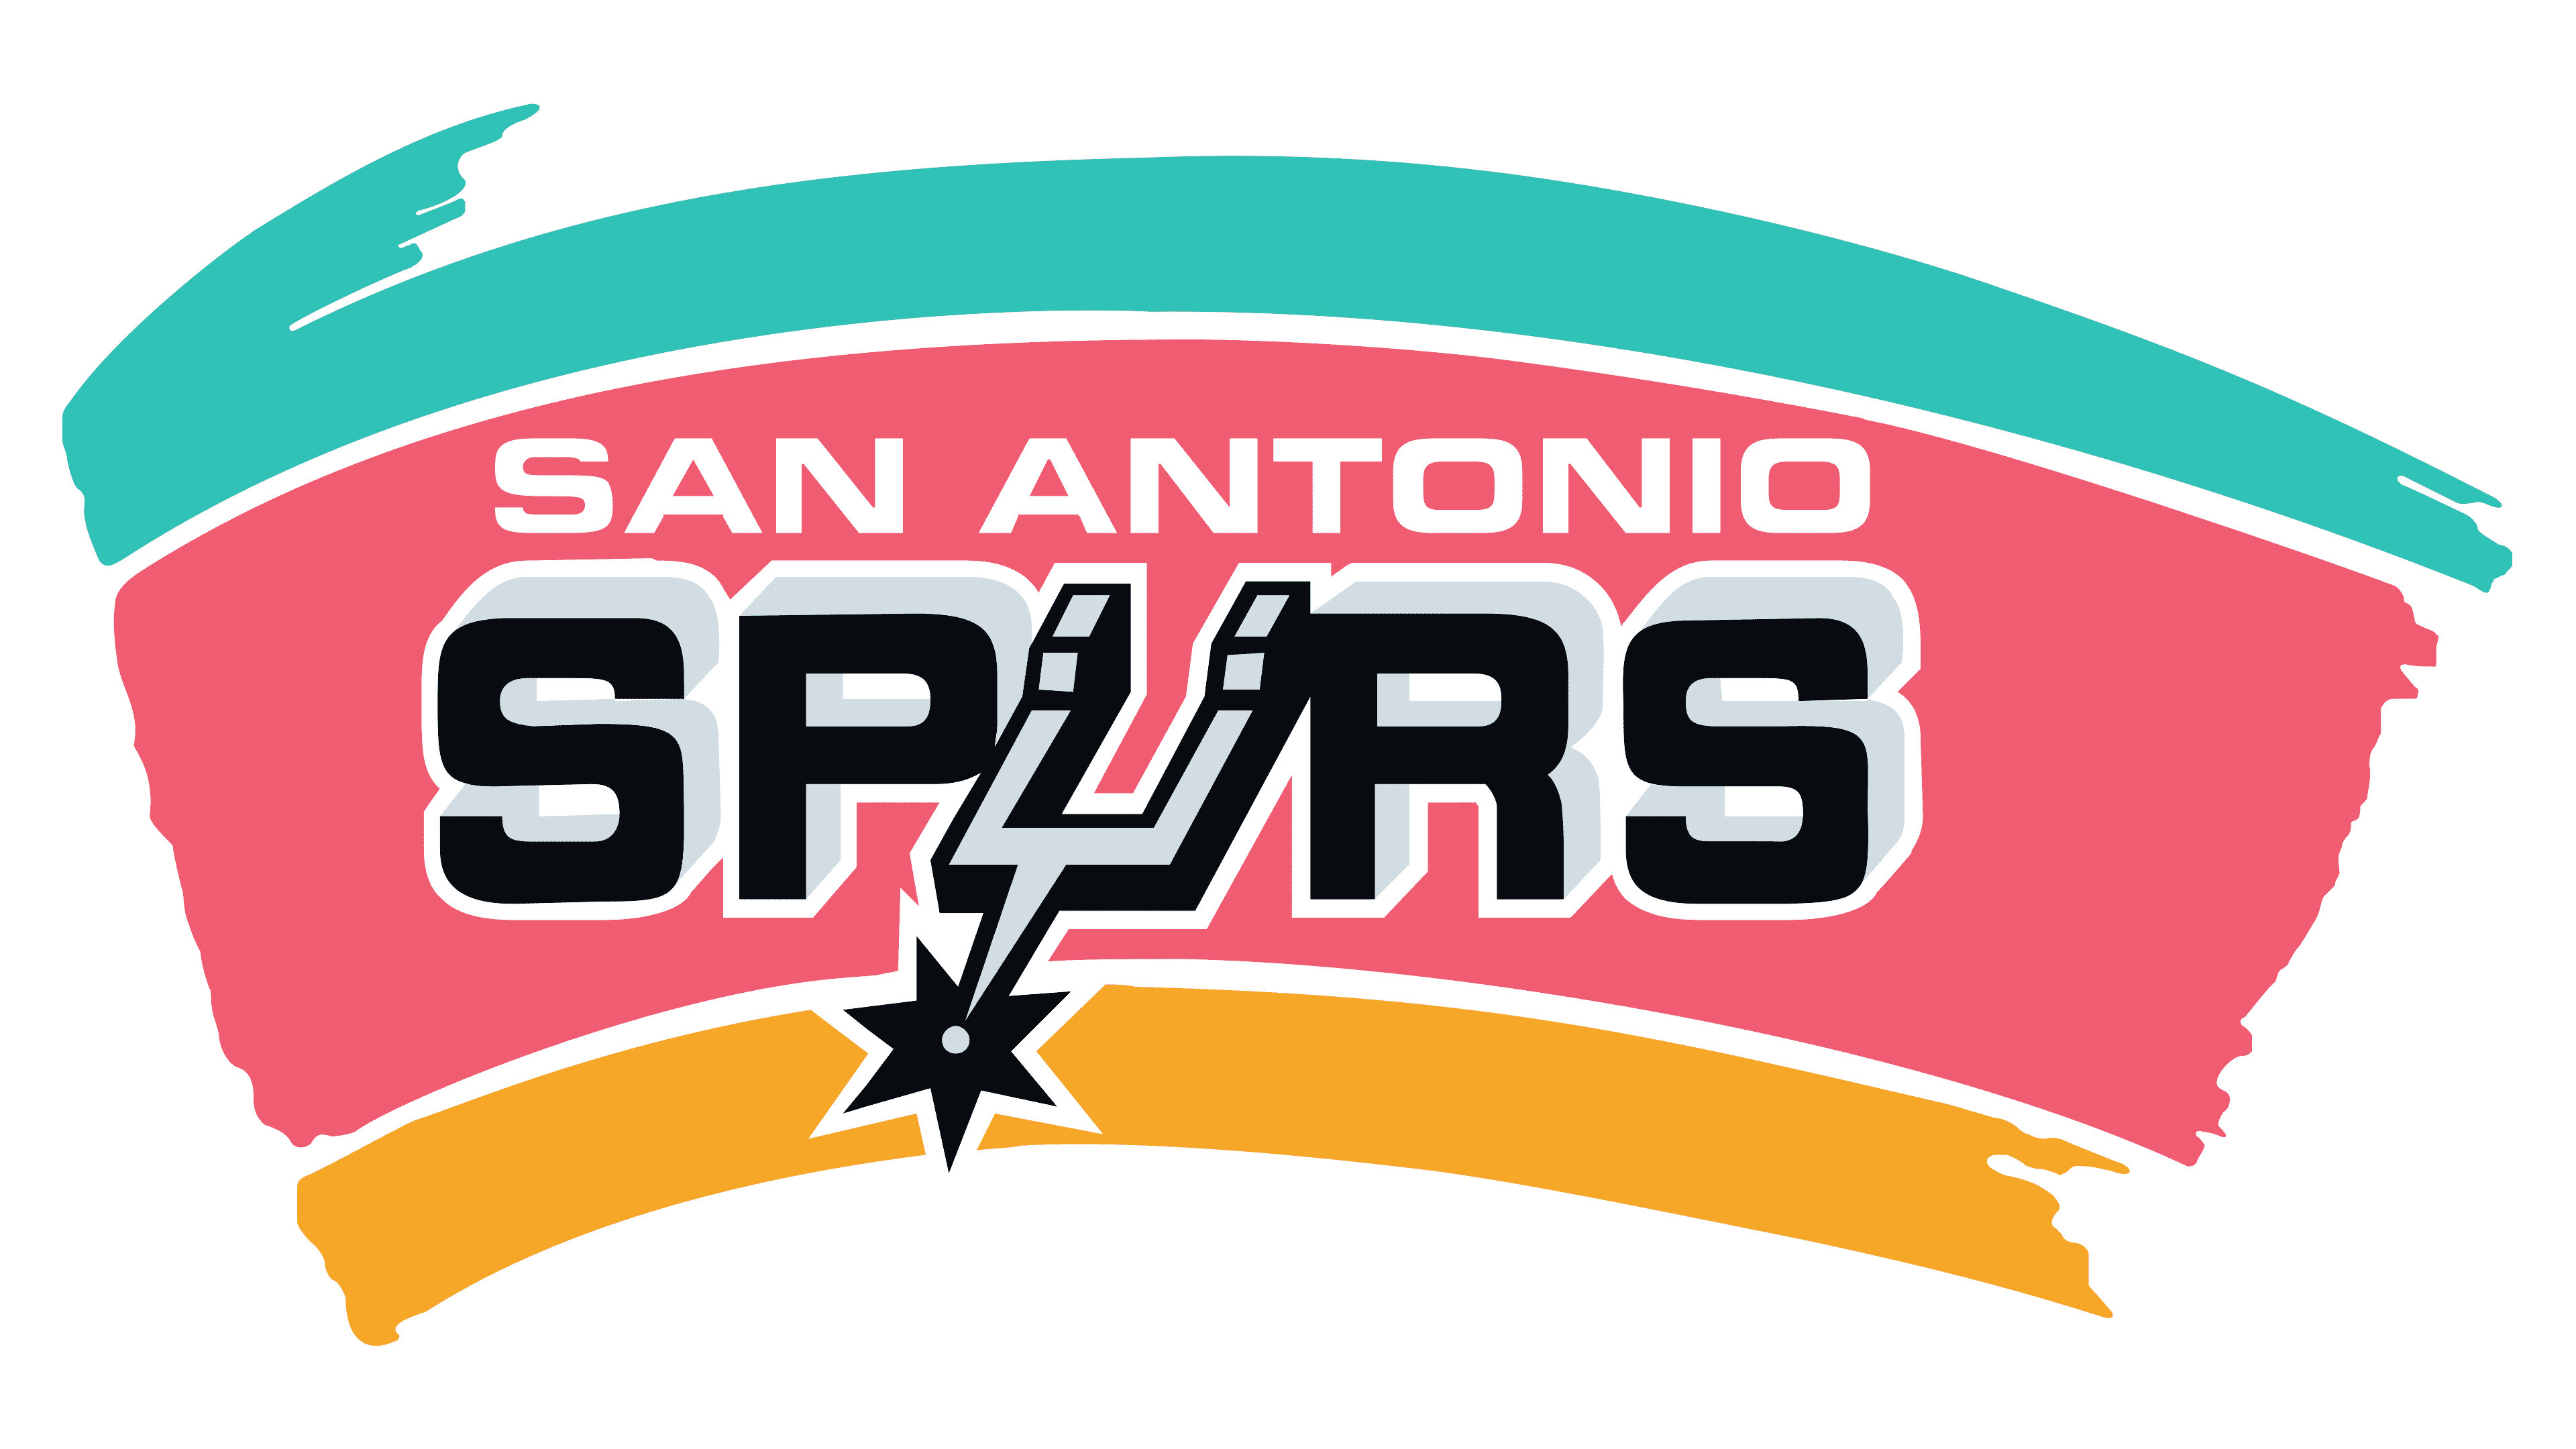 San Antonio Spurs Logo 1989 